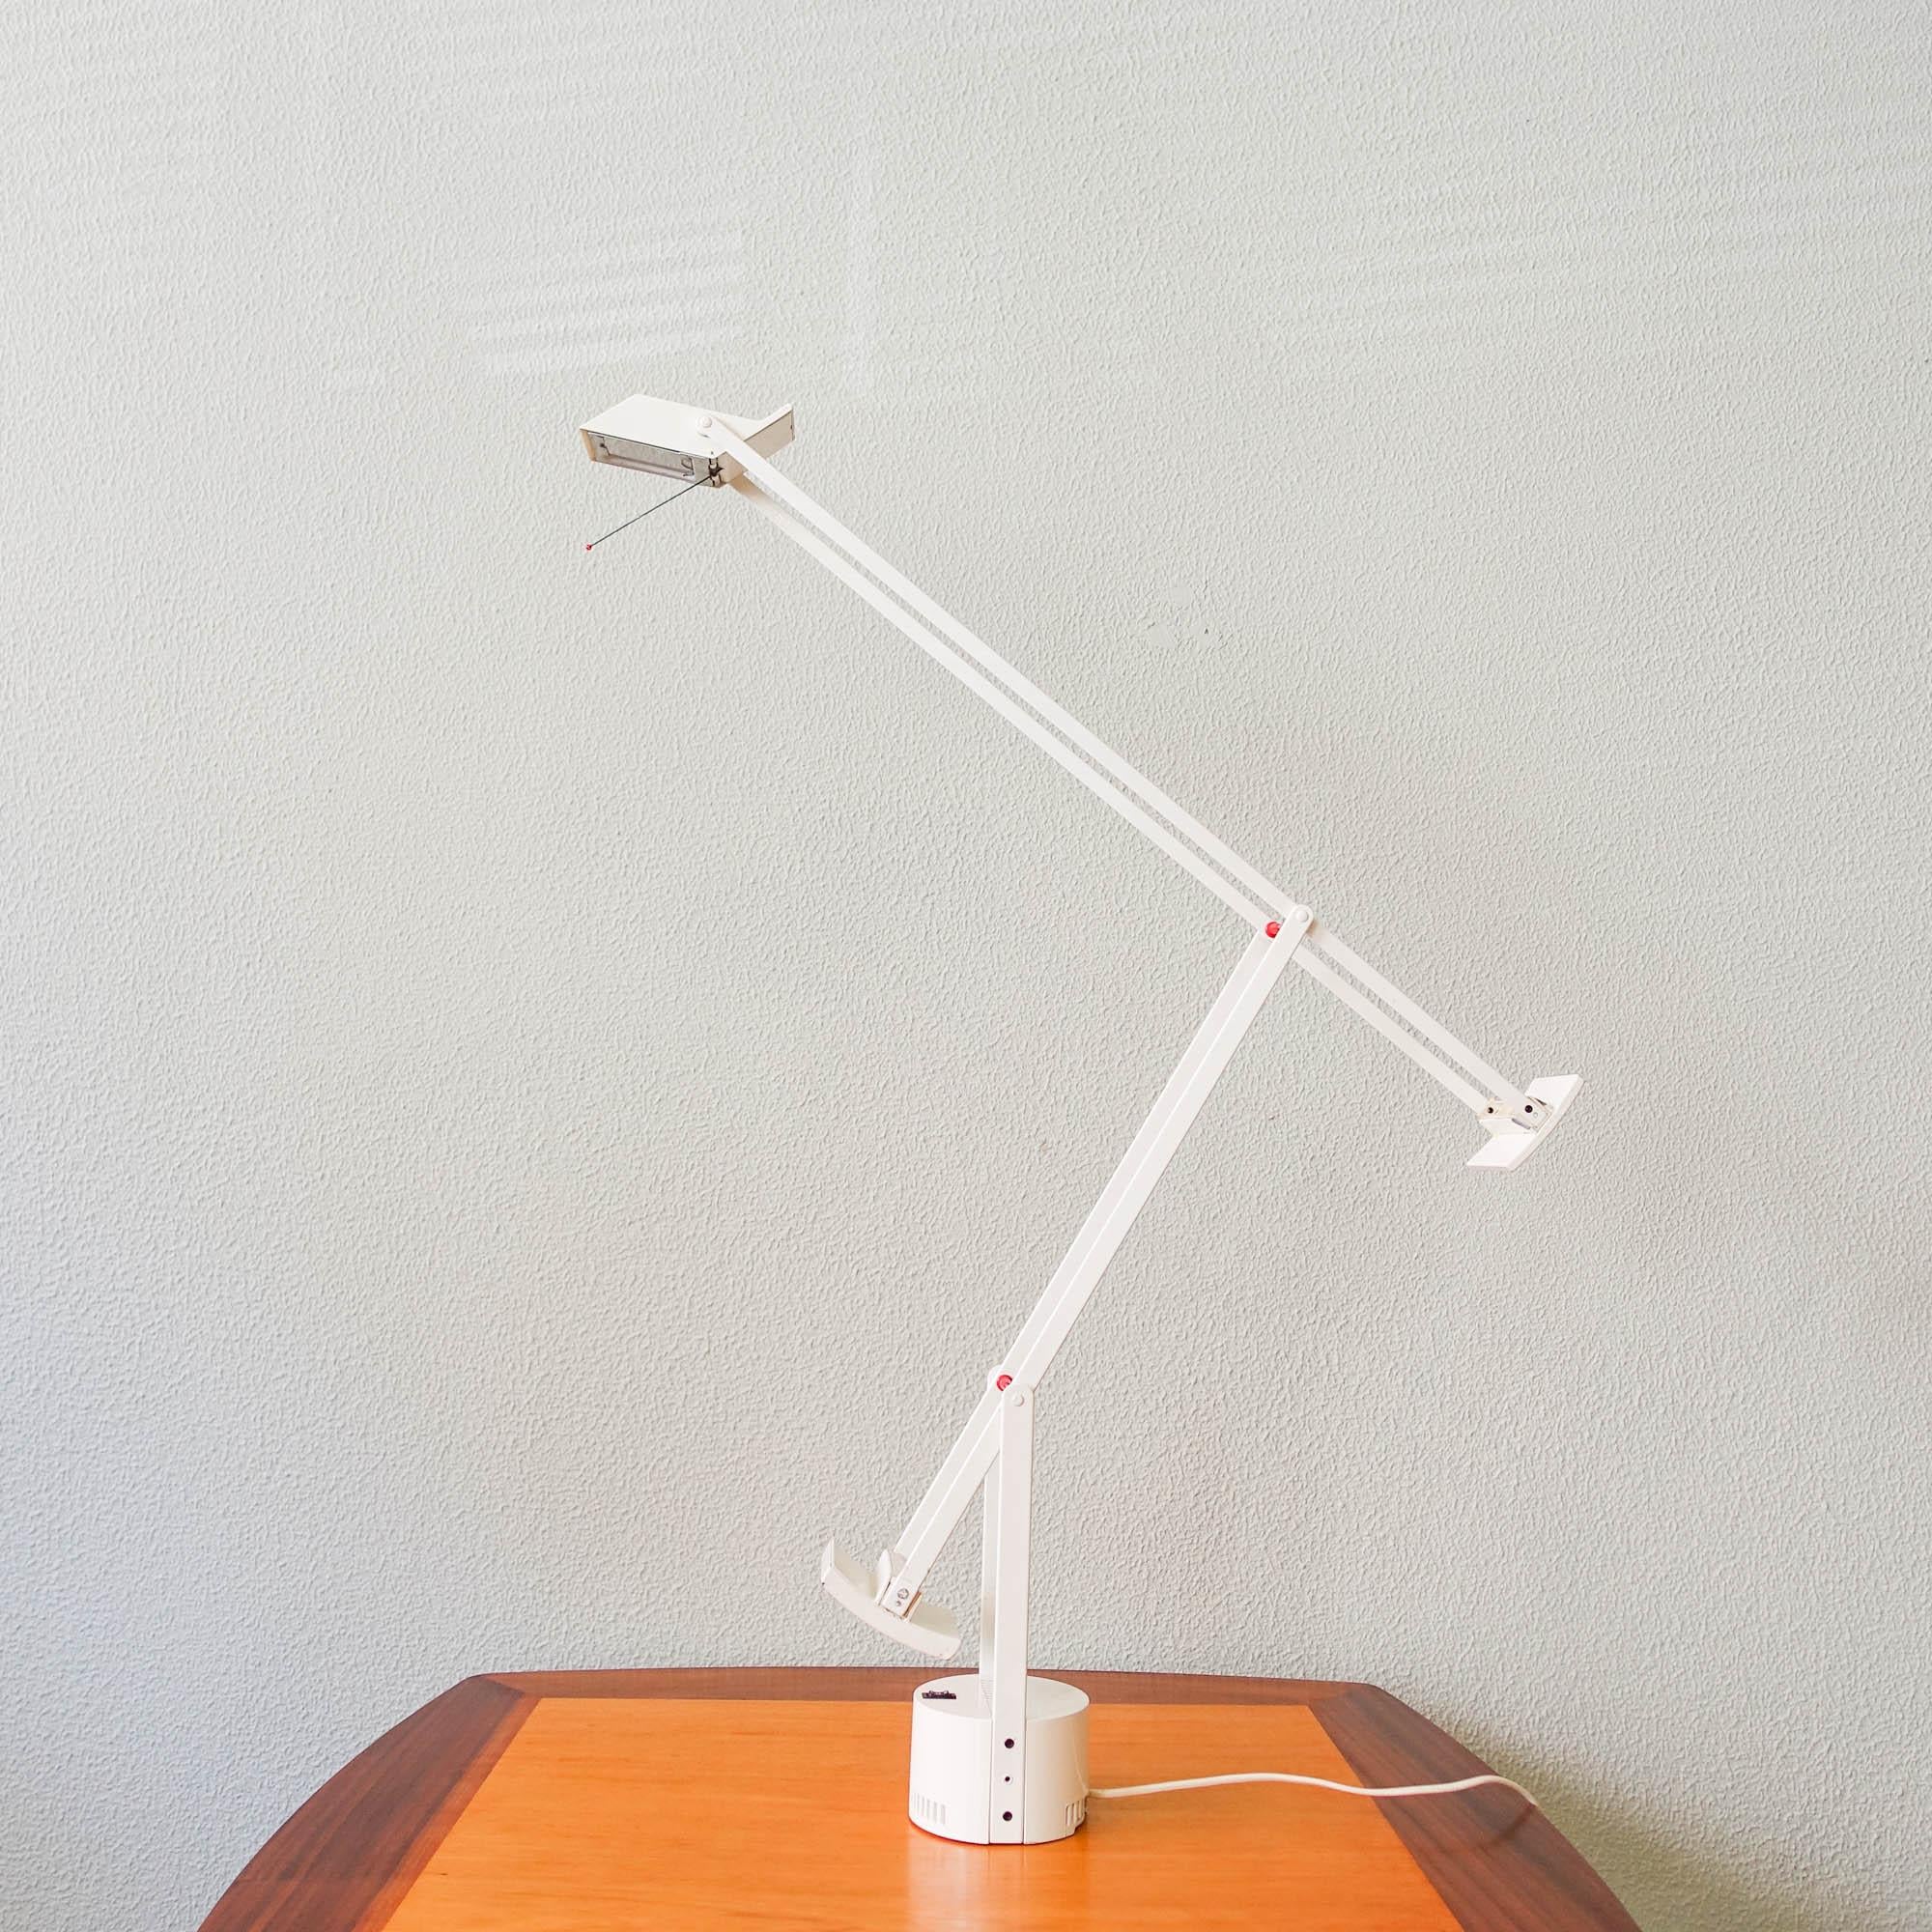 Cette lampe de table, modèle Tizio, a été conçue par Richard Sapper pour Artemide, en Italie, en 1972. Présentée en 1972, la lampe est construite avec deux contrepoids permettant à l'utilisateur de diriger la lumière à sa guise.
La lampe s'ajuste